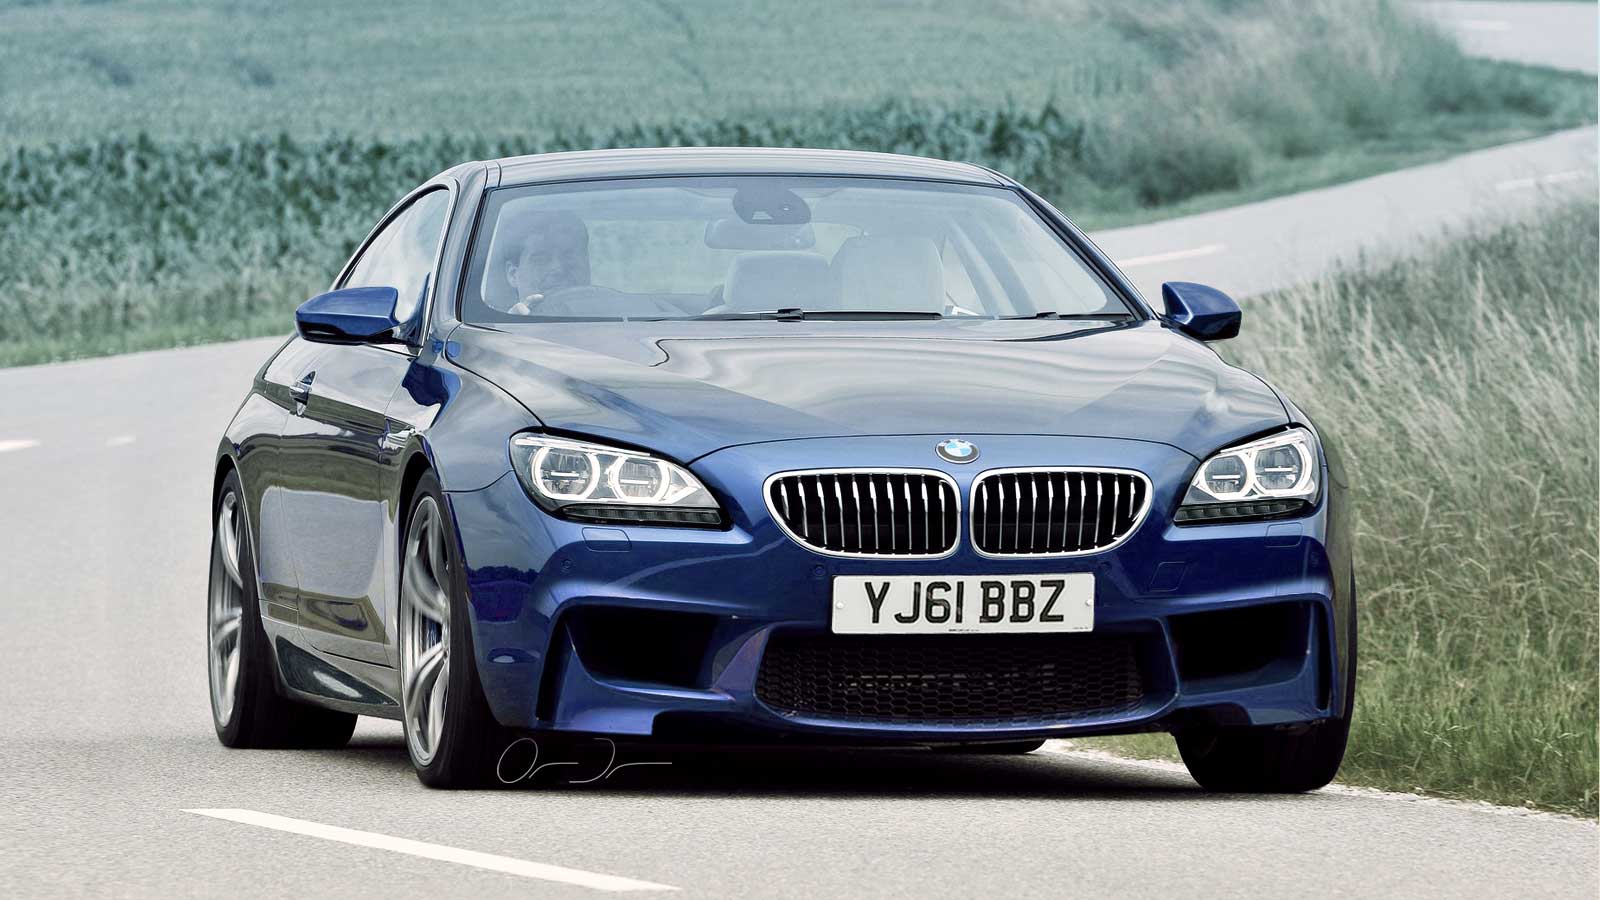 BMW-M6-F13-Coupé-Rendering-Duron-Automotive-Artwork-1.jpg